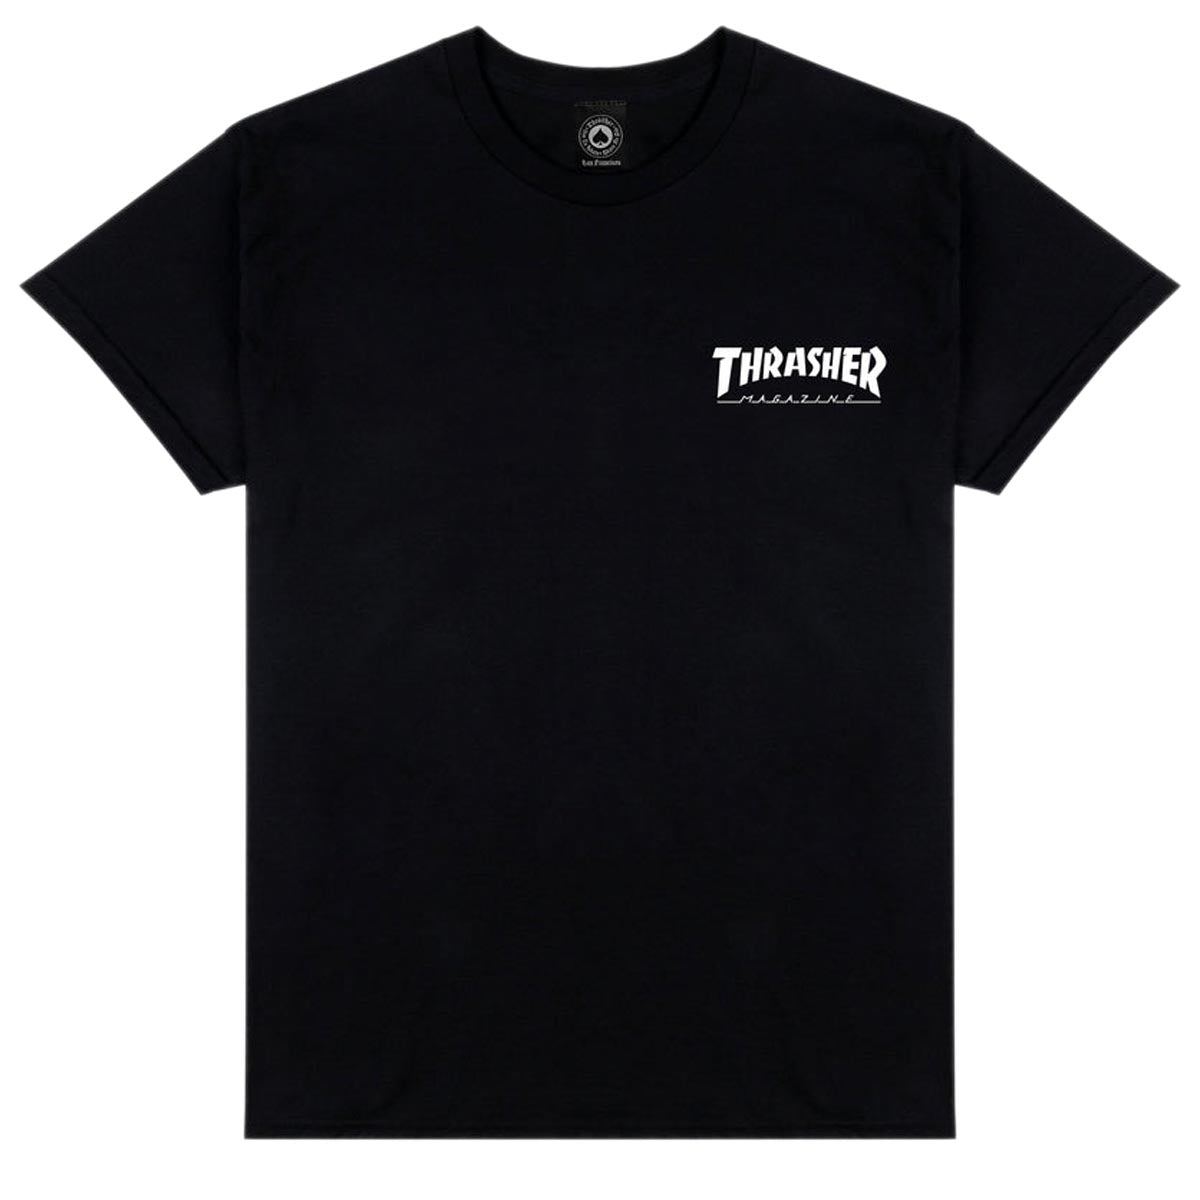 Thrasher Little Thrasher T-Shirt - Black image 1